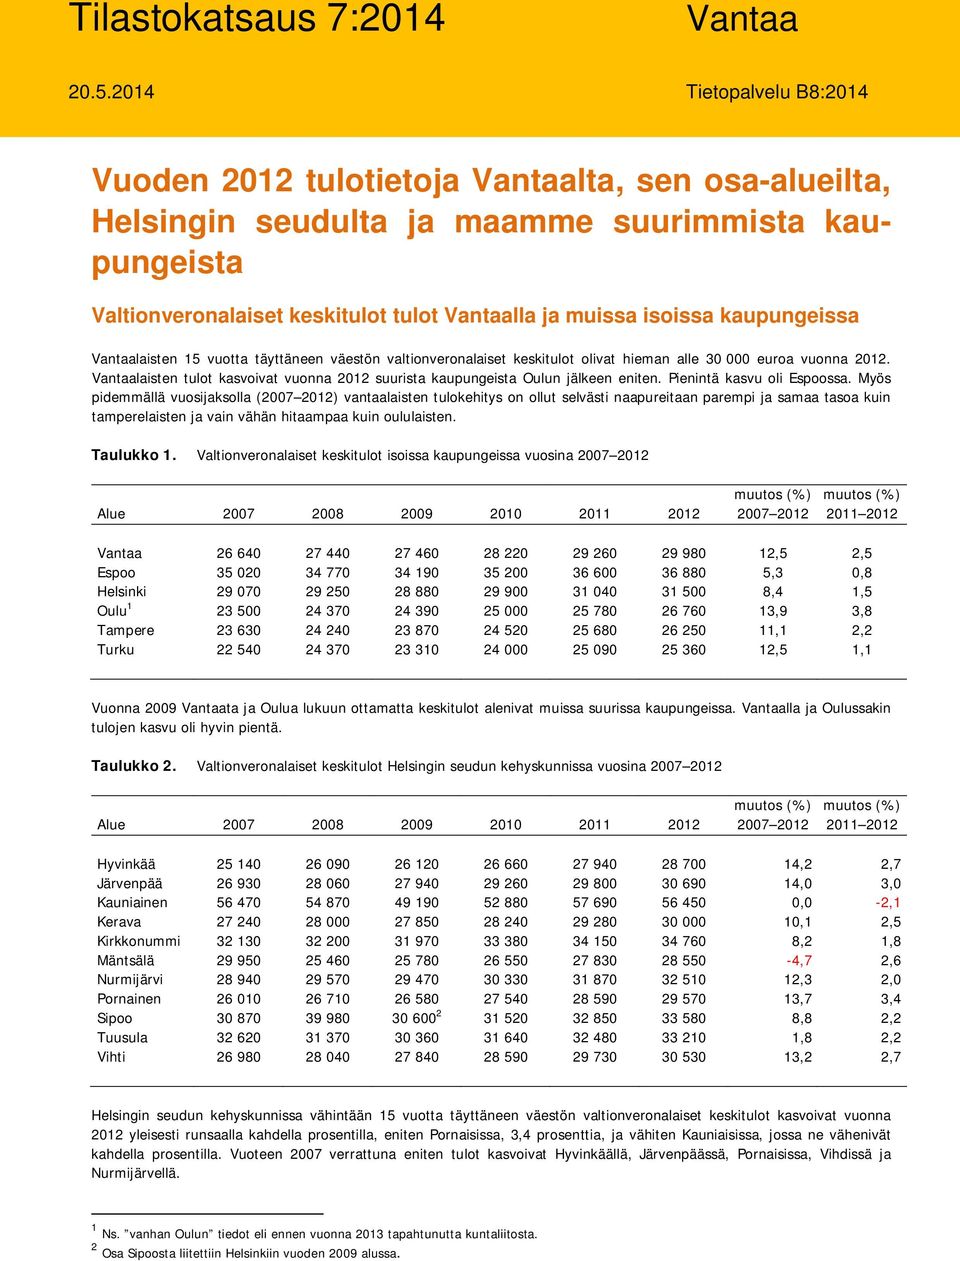 kaupungeissa Vantaalaisten 15 vuotta täyttäneen väestön valtionveronalaiset keskitulot olivat hieman alle 30 000 euroa vuonna 2012.